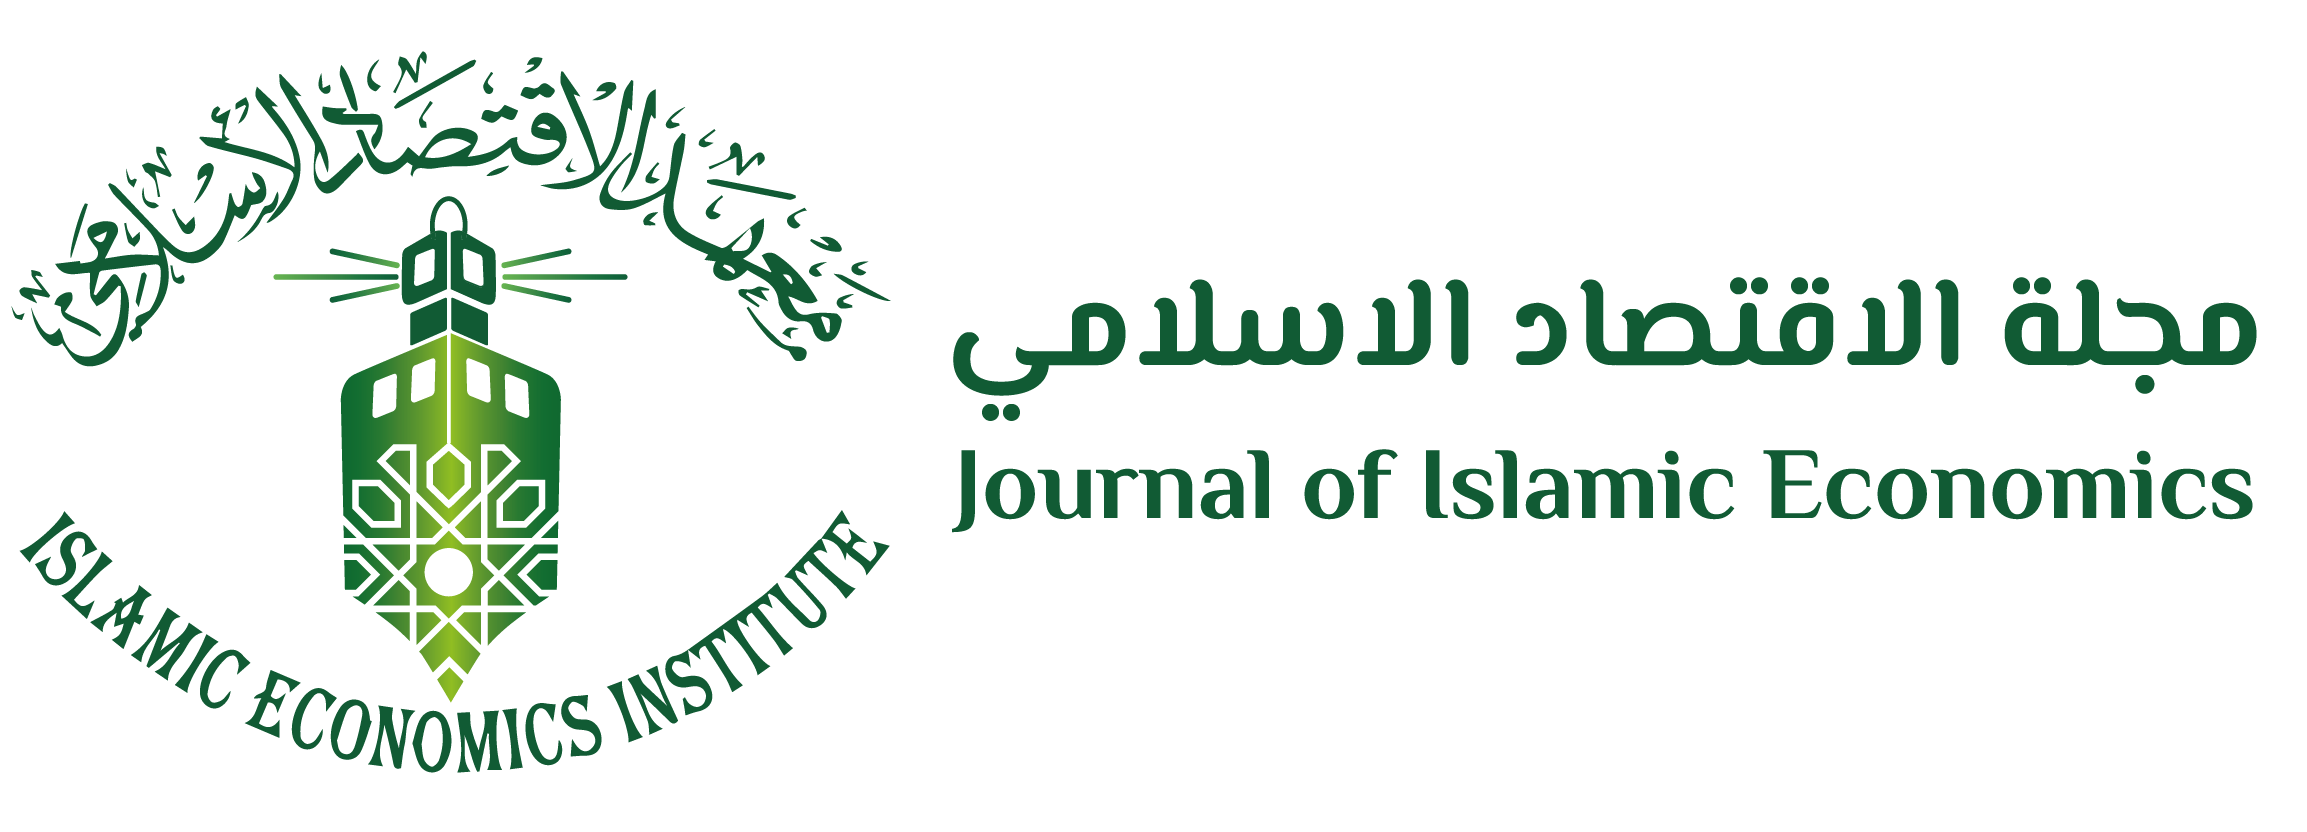 Journal Of Islamic Economics